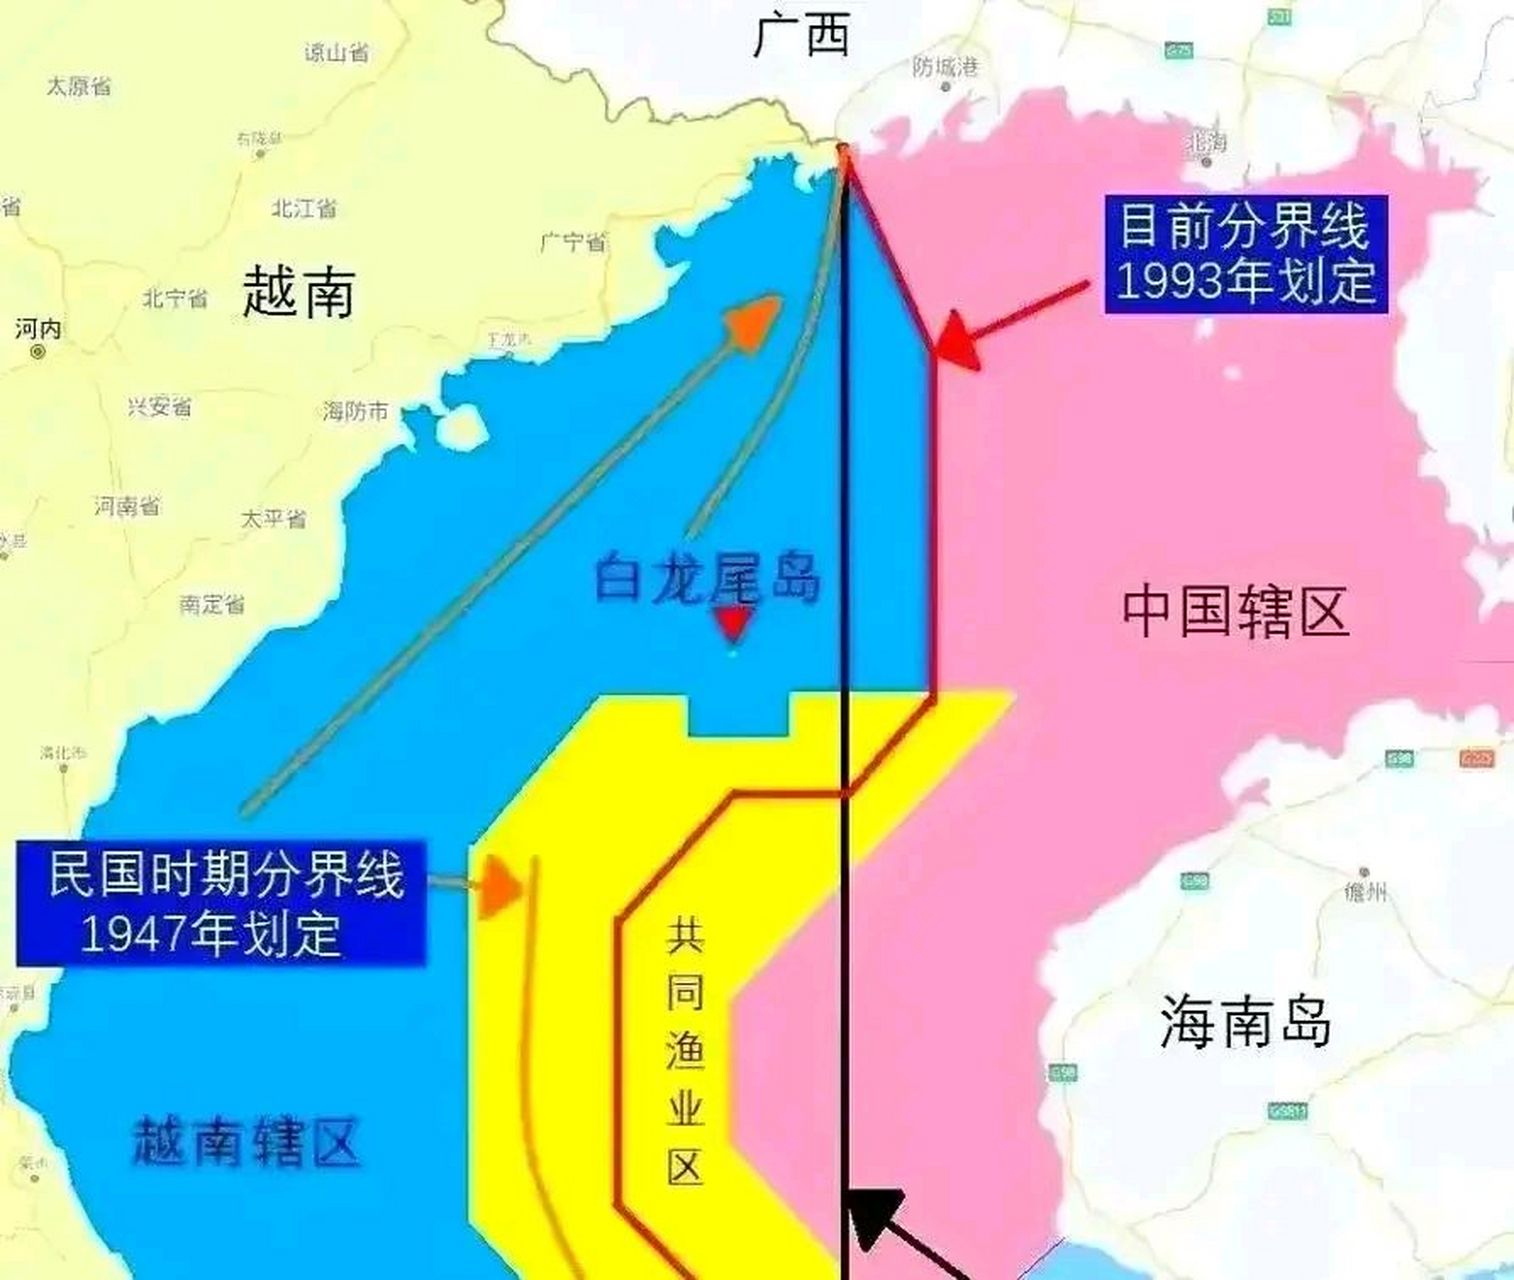 两国关系友好,中国本着睦邻友好的原则,妥善处理与越南在北部湾的划分